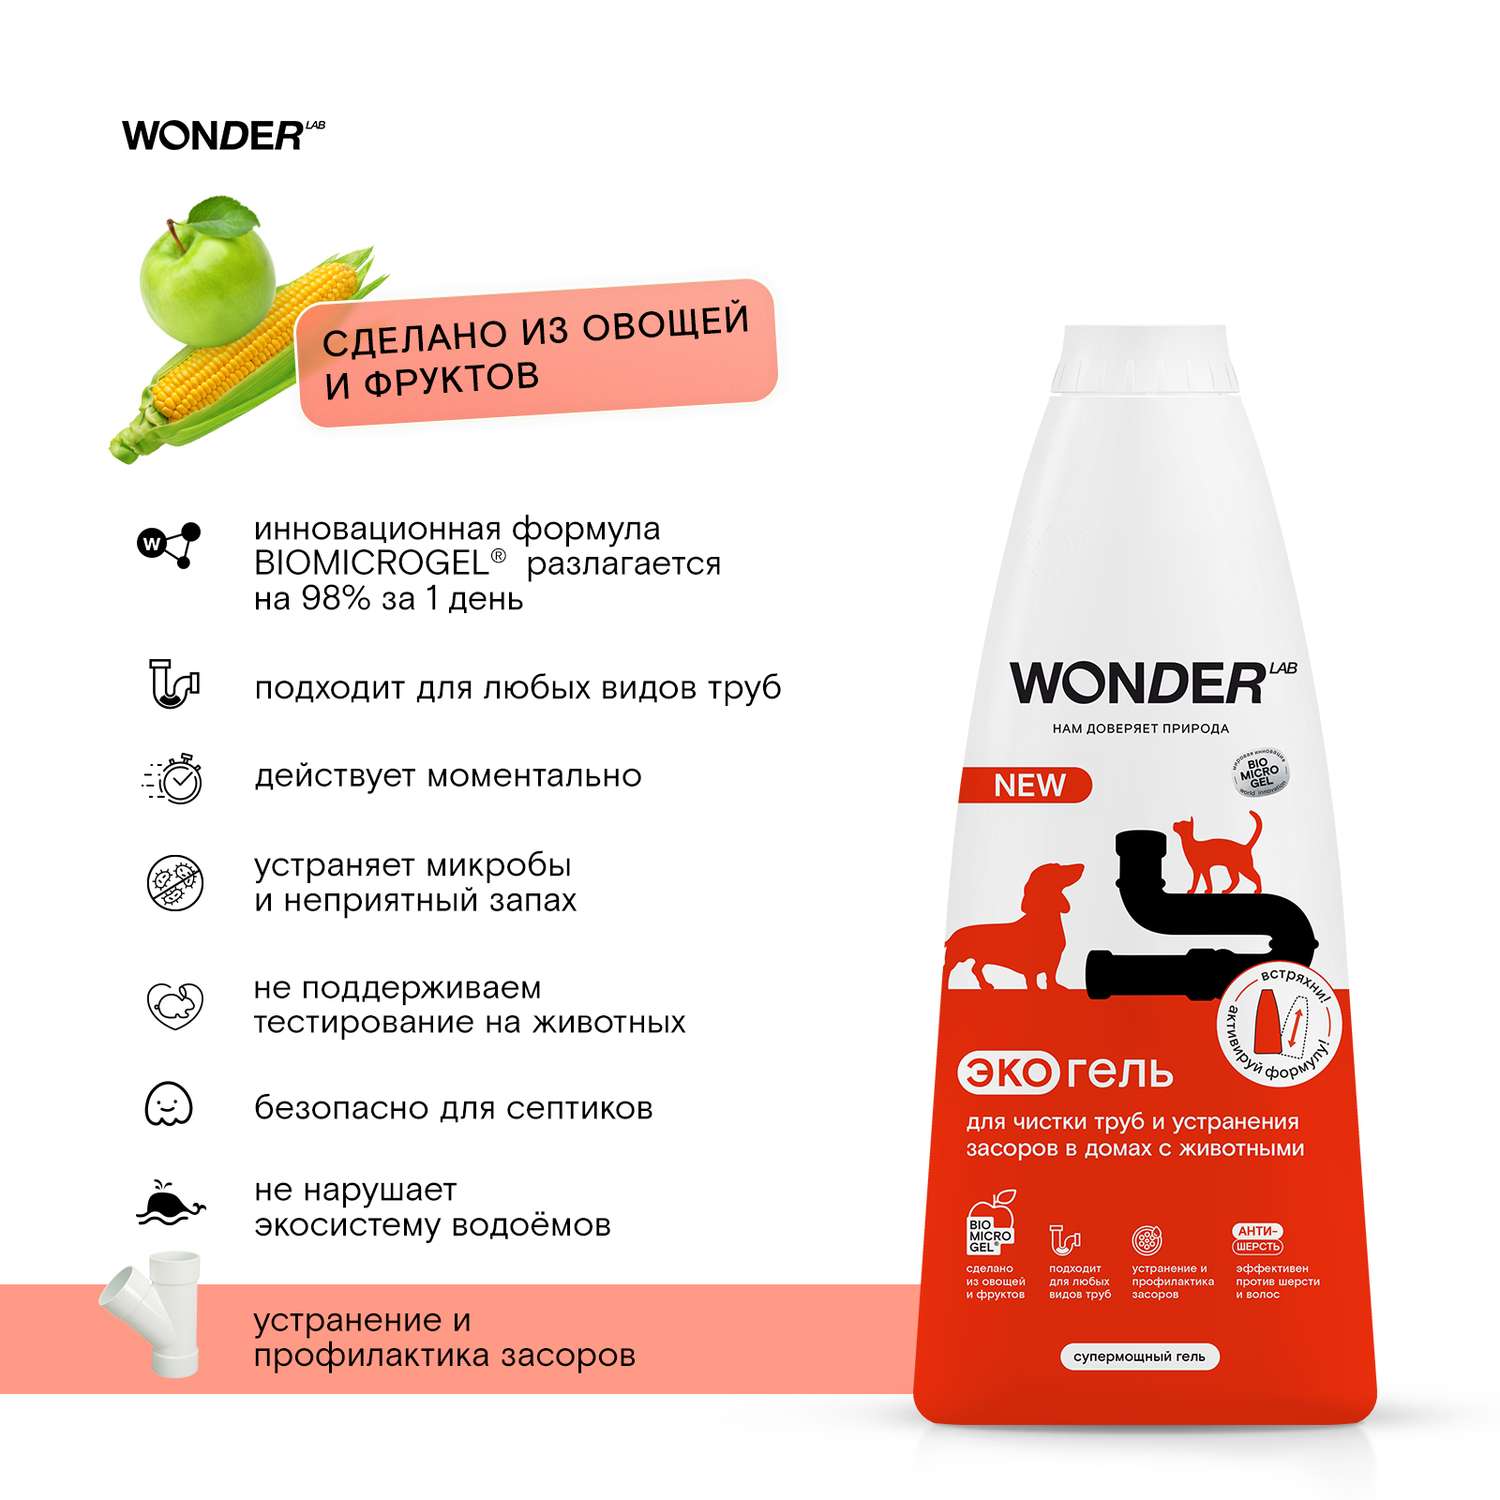 Гель для чистки труб и устранения засоров в домах с животными WONDER Lab 1.1л - фото 5